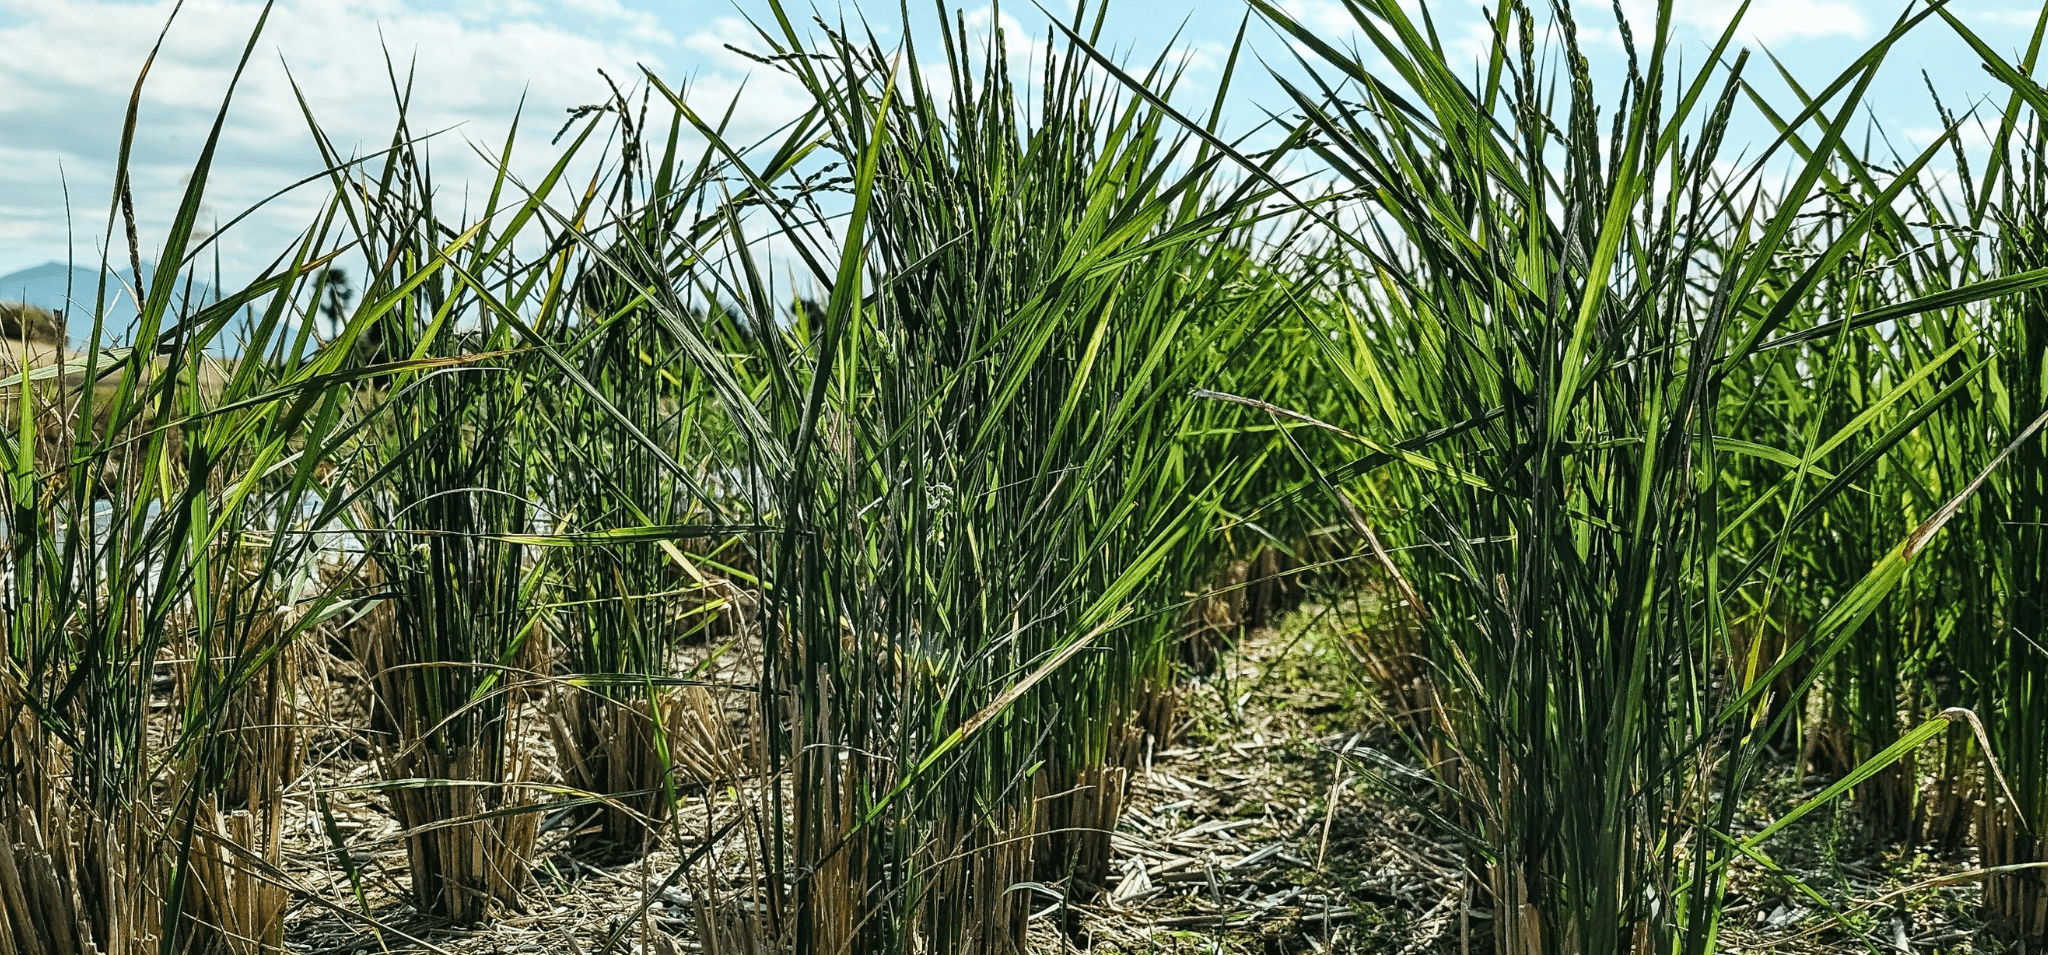 Foto em formato paisagem de um plantio de cana-de-açúcar. A imagem mostra plantação de cana e conta com elementos secundários como céu azul e nuvens brancas. Fim da descrição.